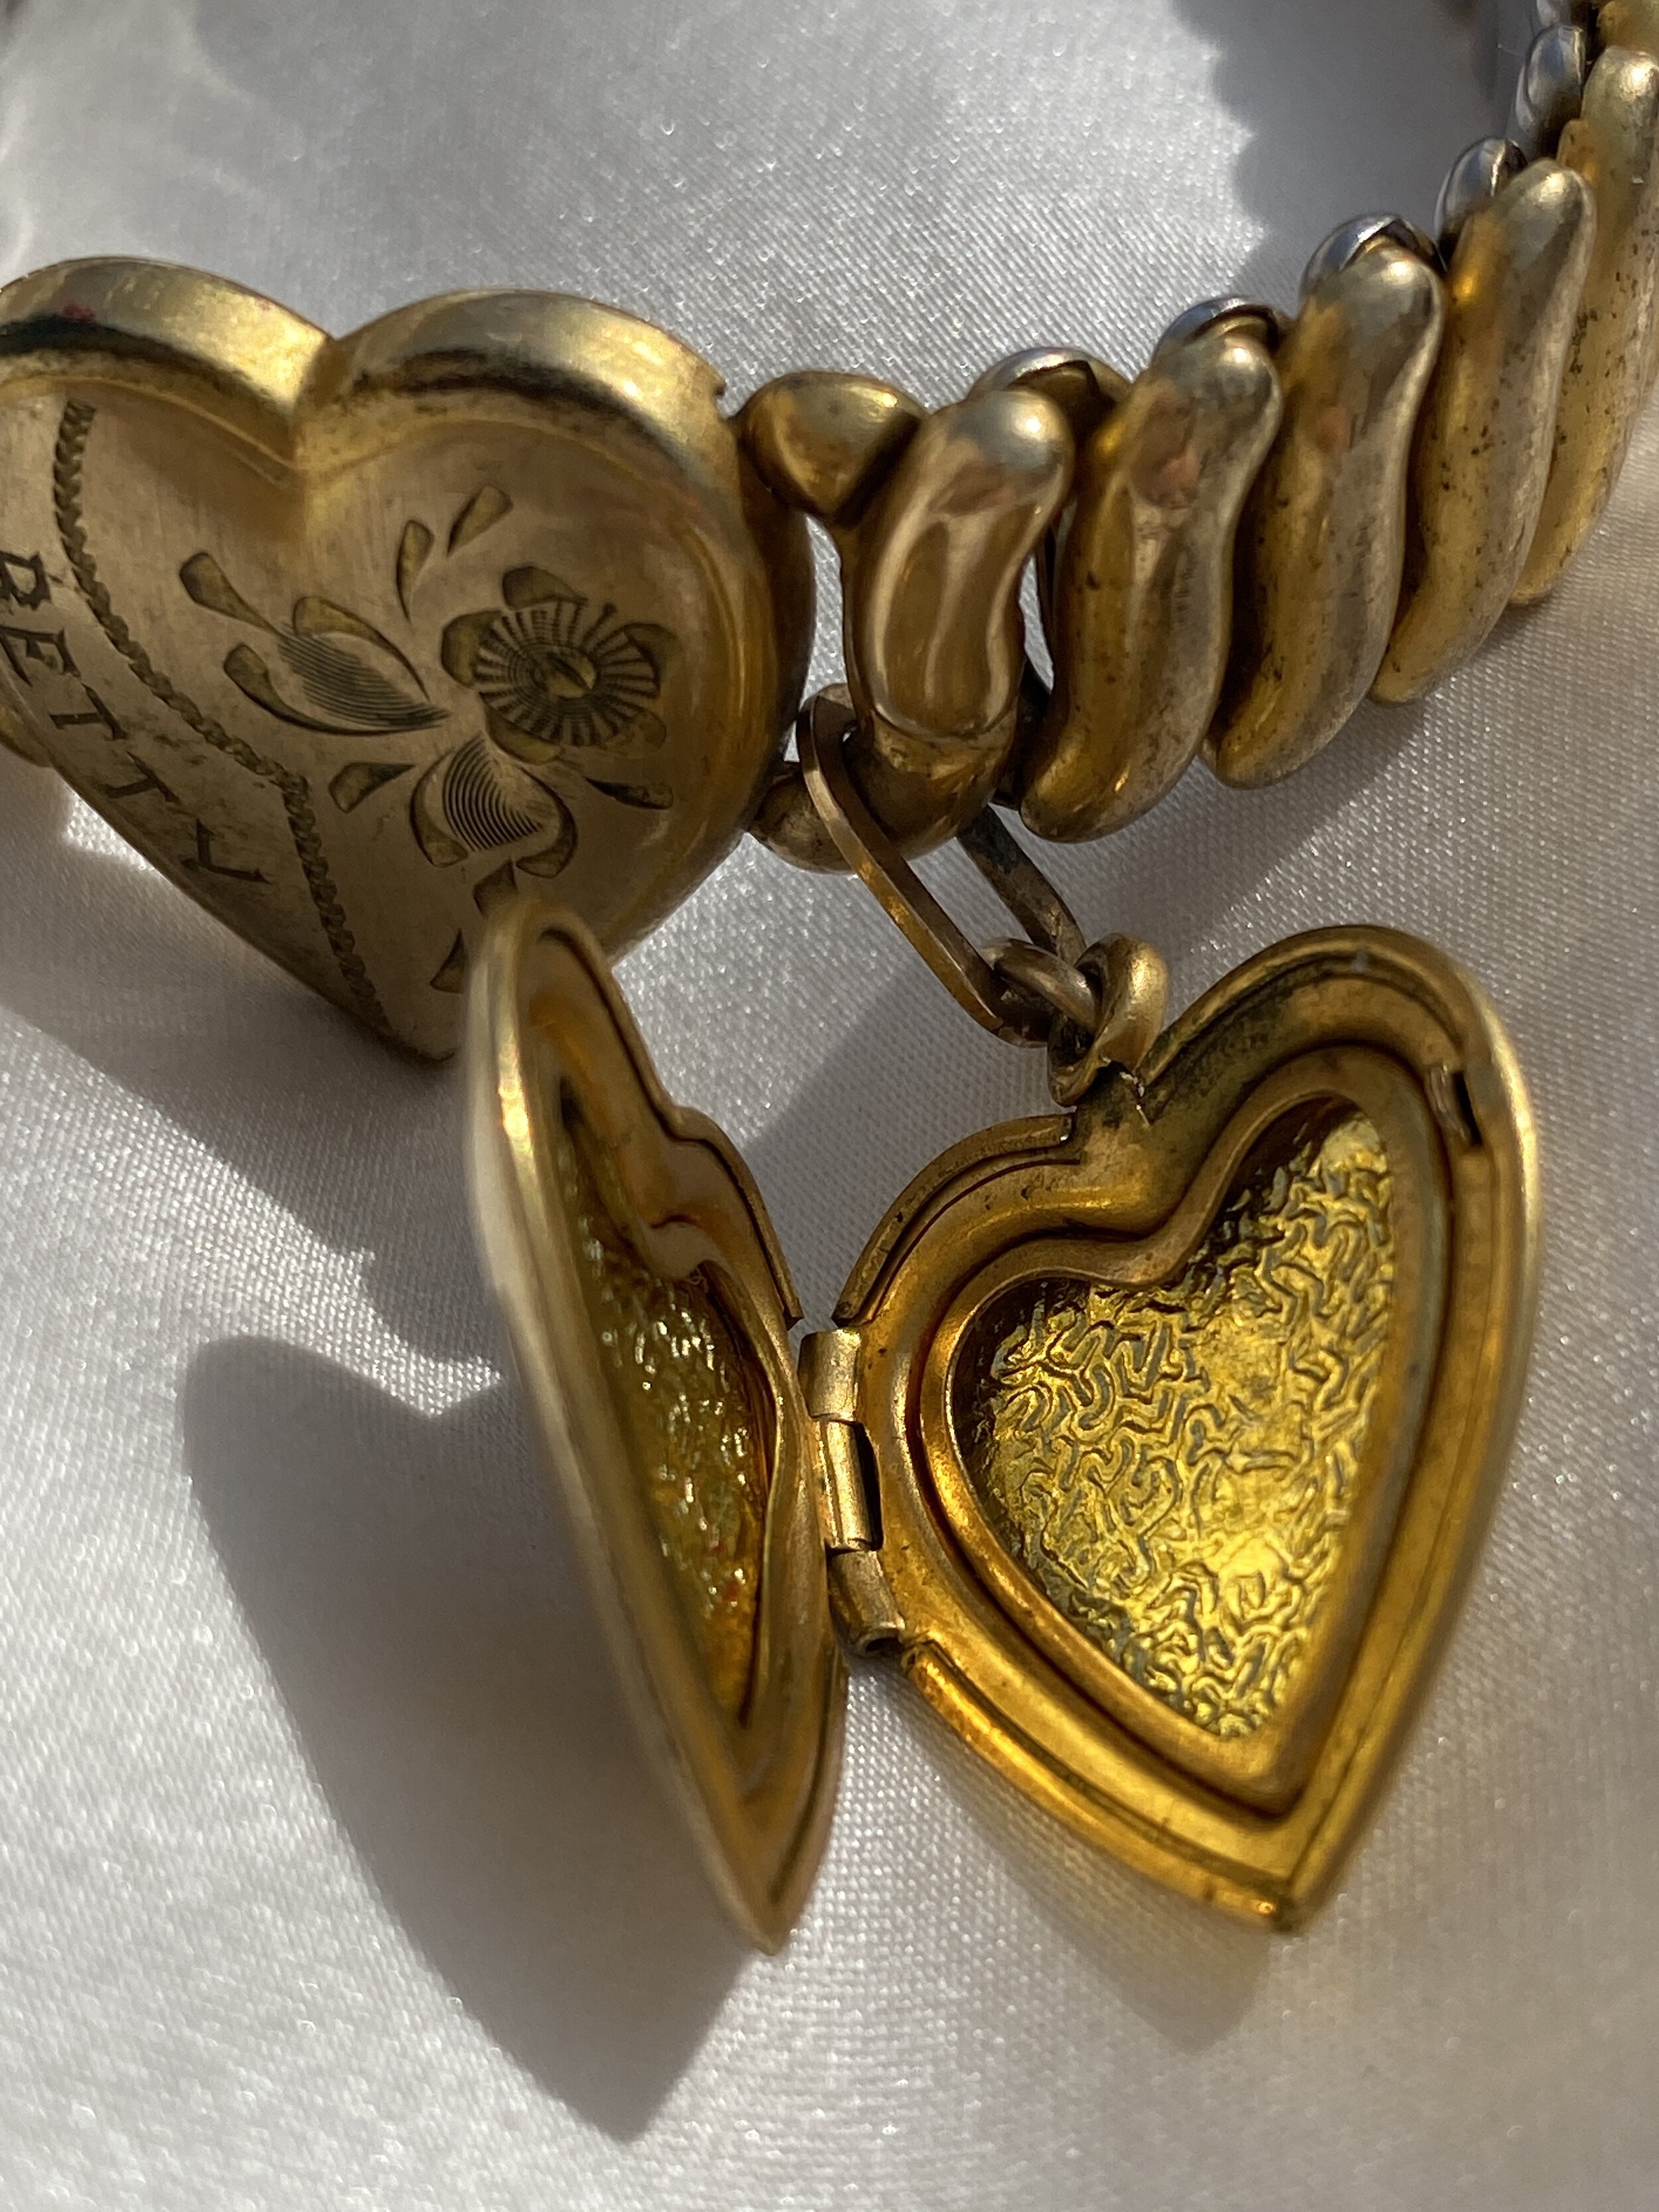 Rare Louis Vuitton charm bracelet 😍#capcut #charmbracelet #charmbrace